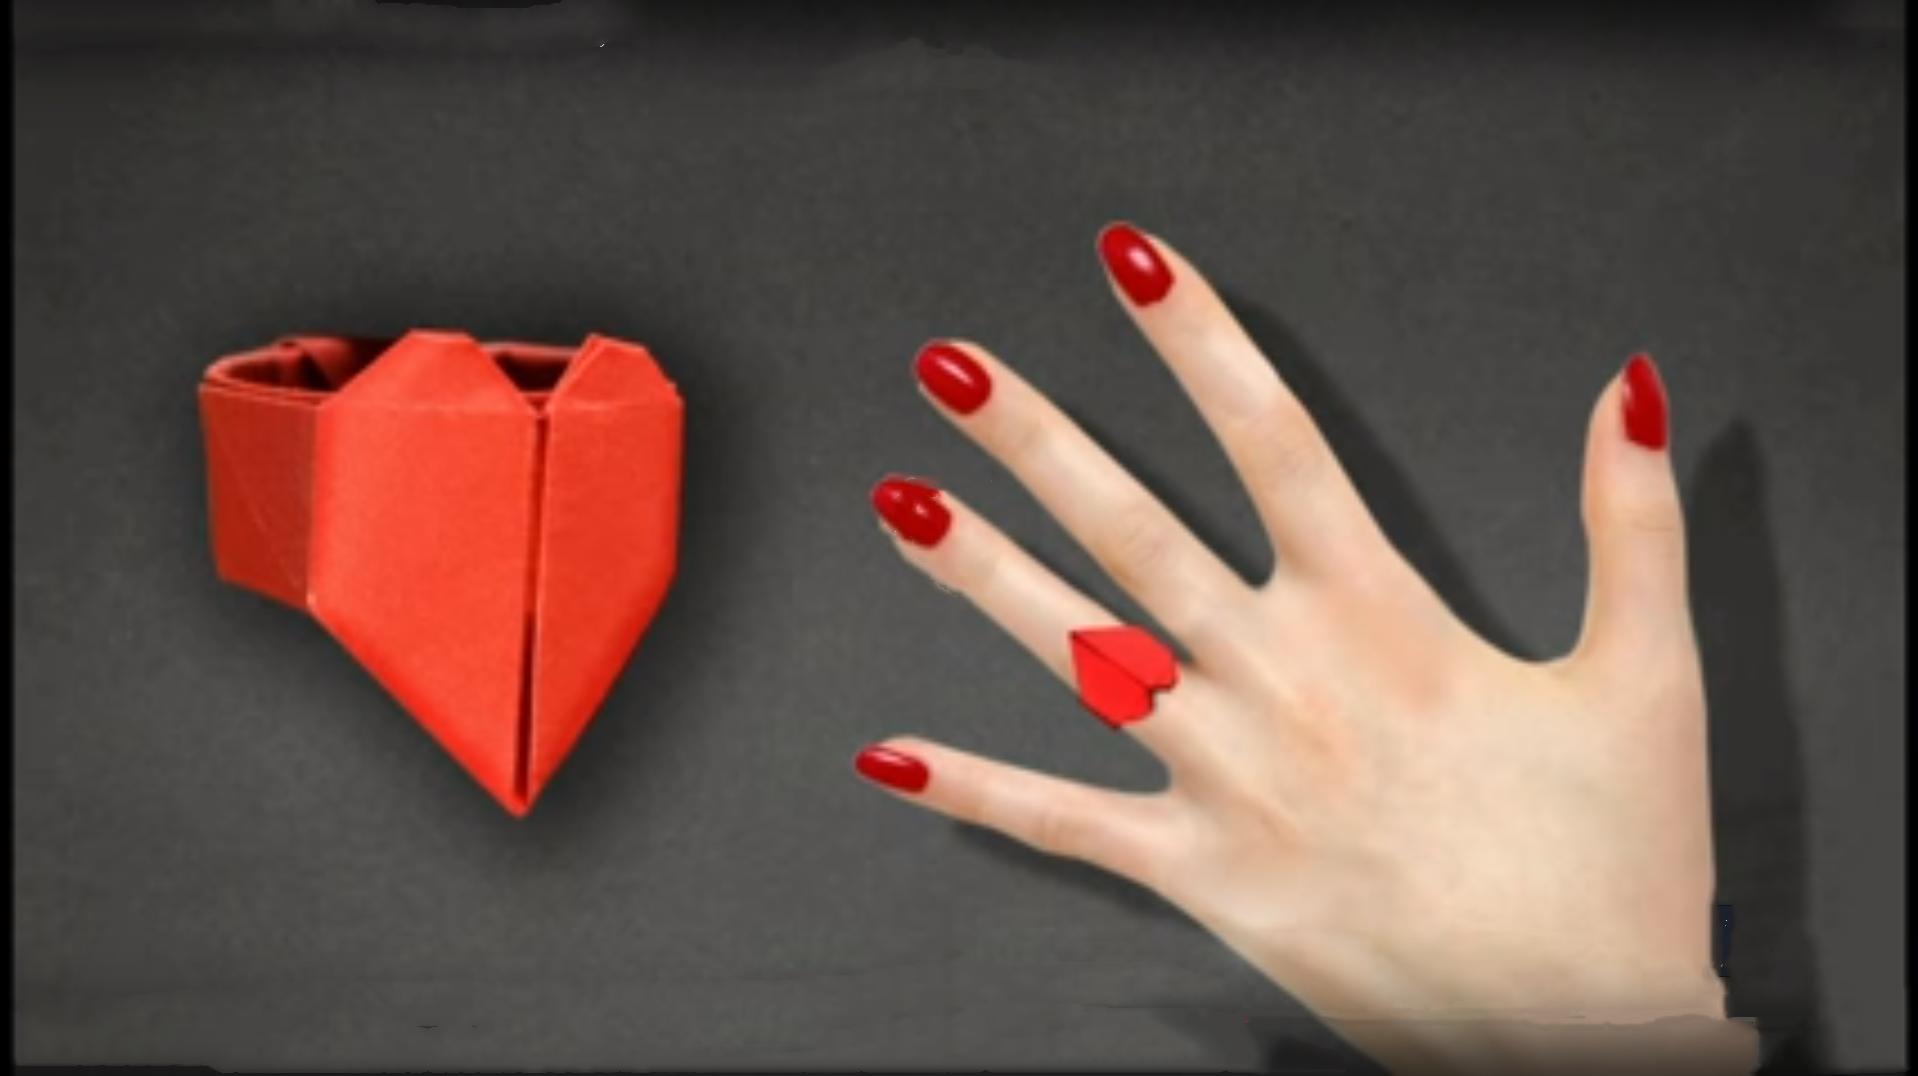 漂亮的爱心戒指折纸,做法很简单,学会送喜欢的人当作小惊喜!